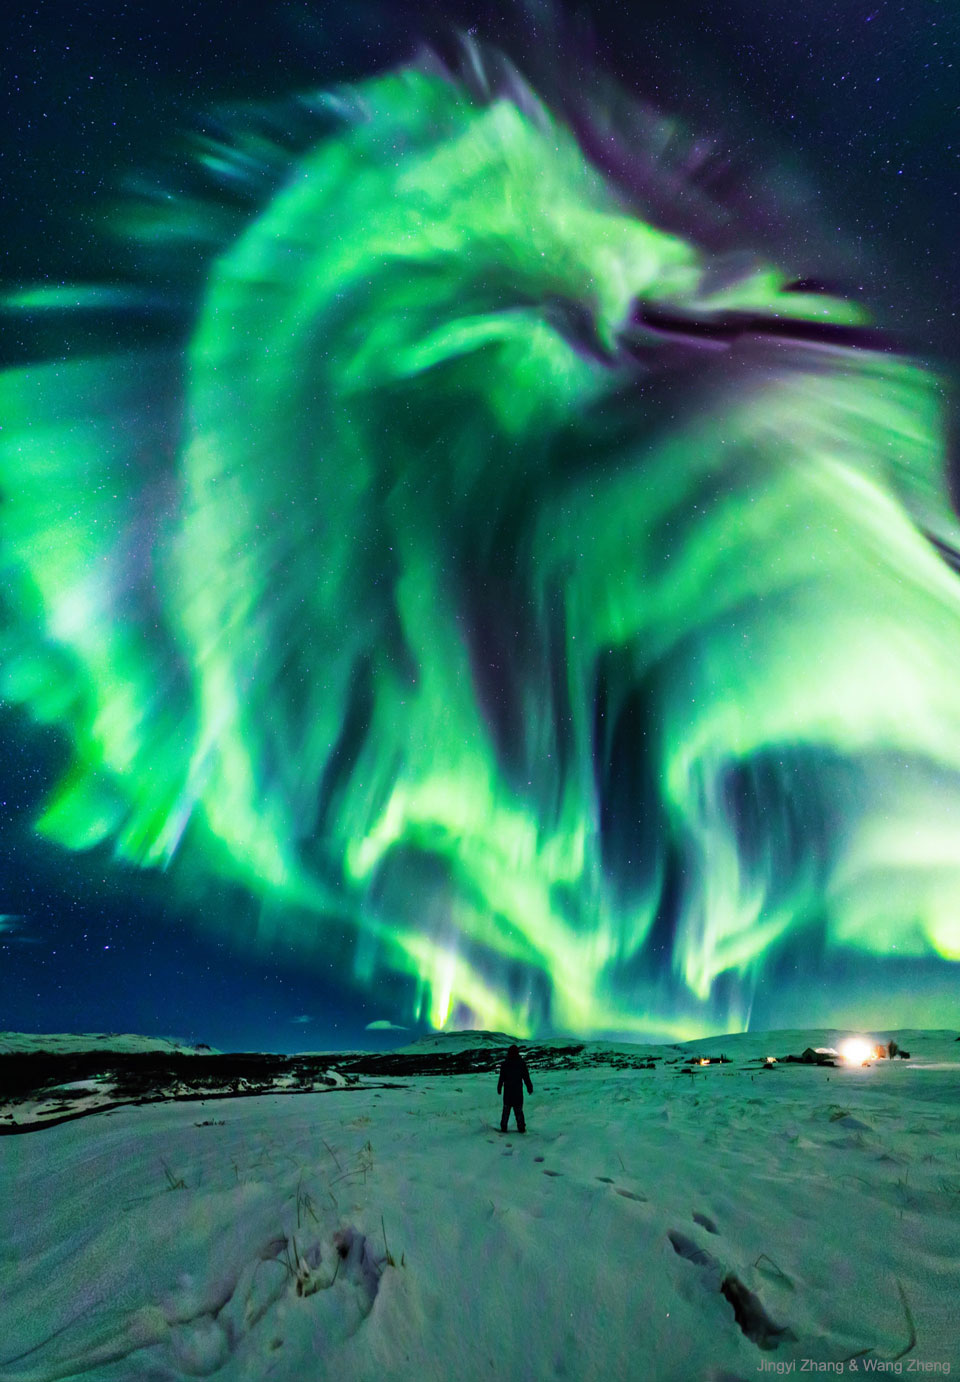 一个人站在雪地上，仰望星空。天空中，出现了一大片绿色极光，形似巨龙。有关更多详细信息，请参阅说明。